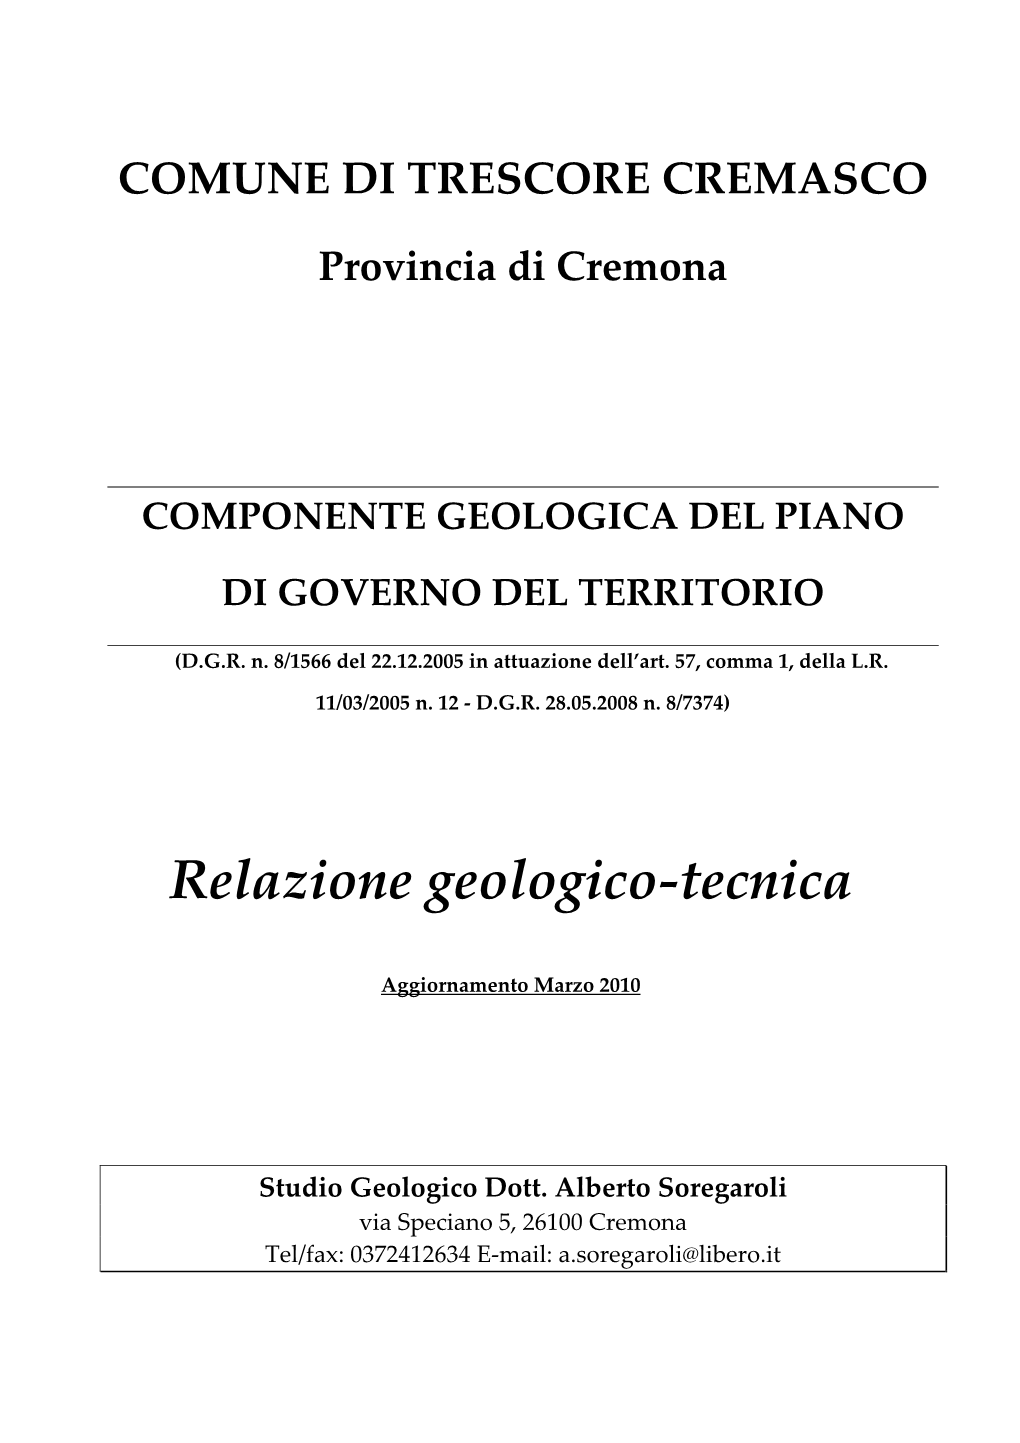 Relazione Geologico-Tecnica